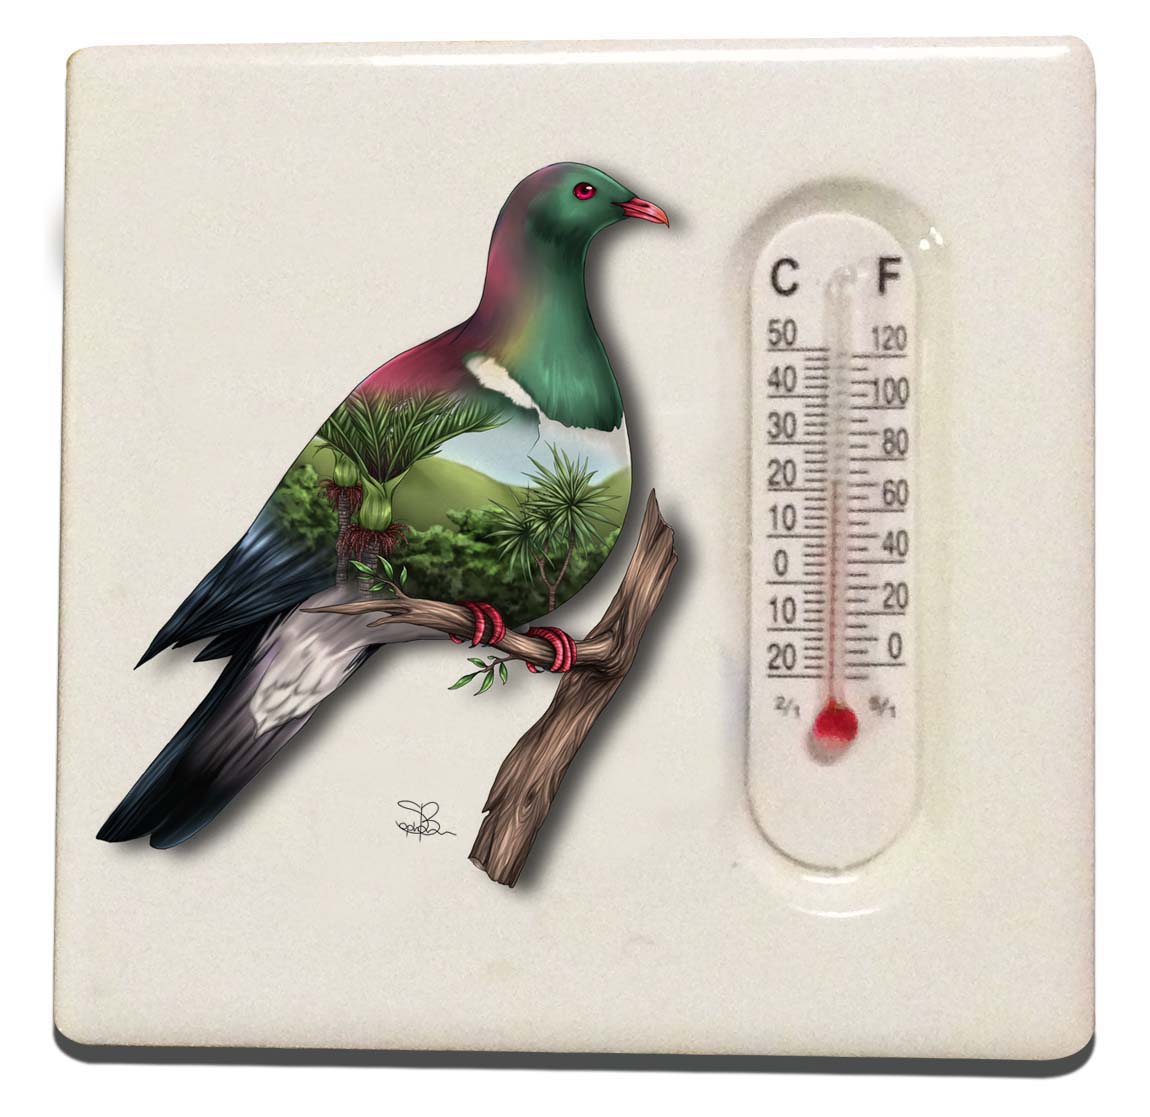 Thermometer Magnet - Sophie Blokker